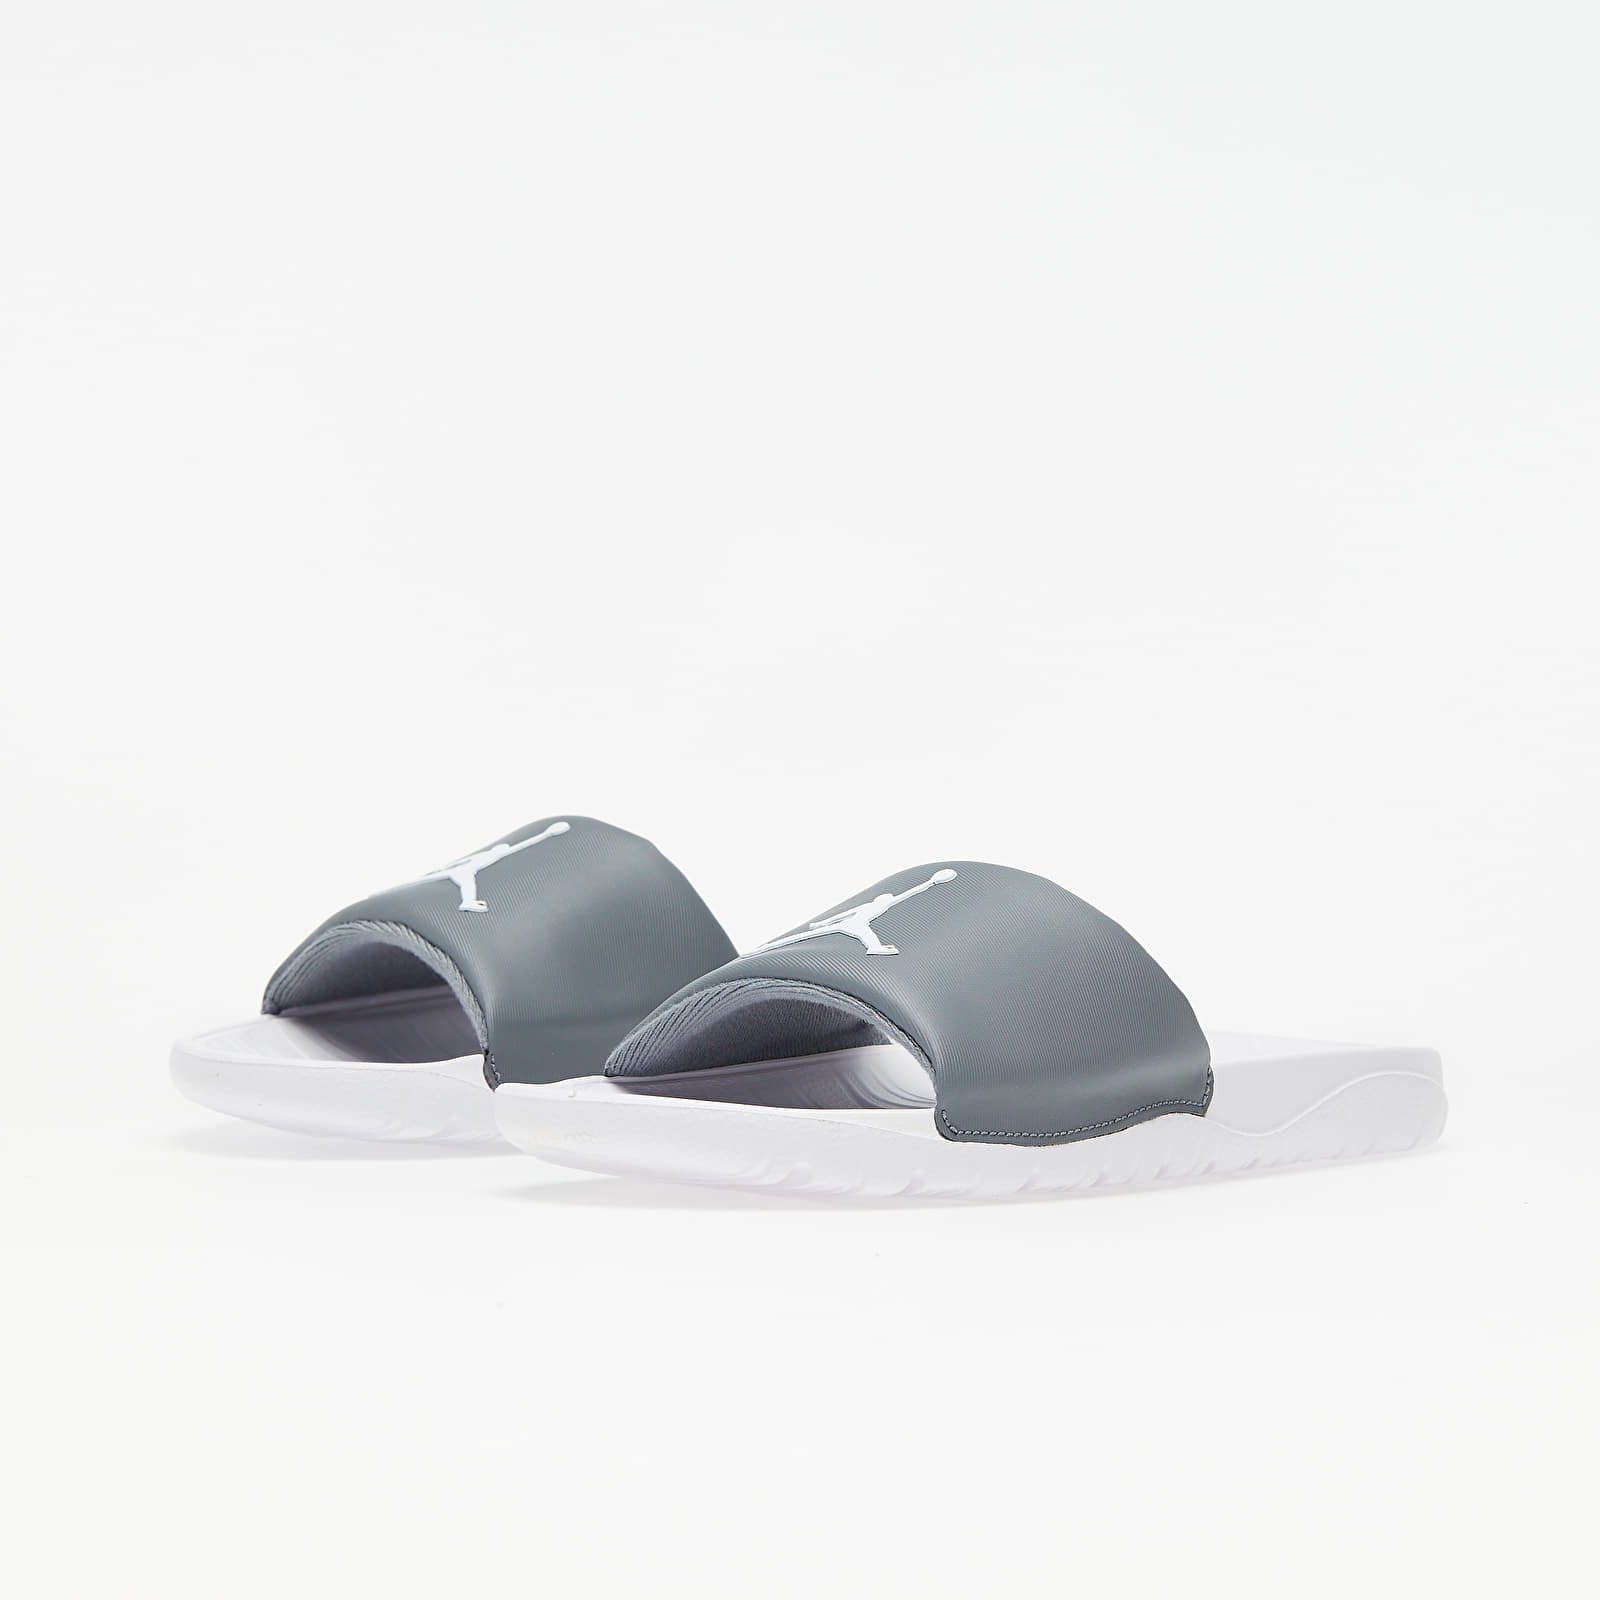 Jordan Break Slide Cool Grey/ White AR6374-012